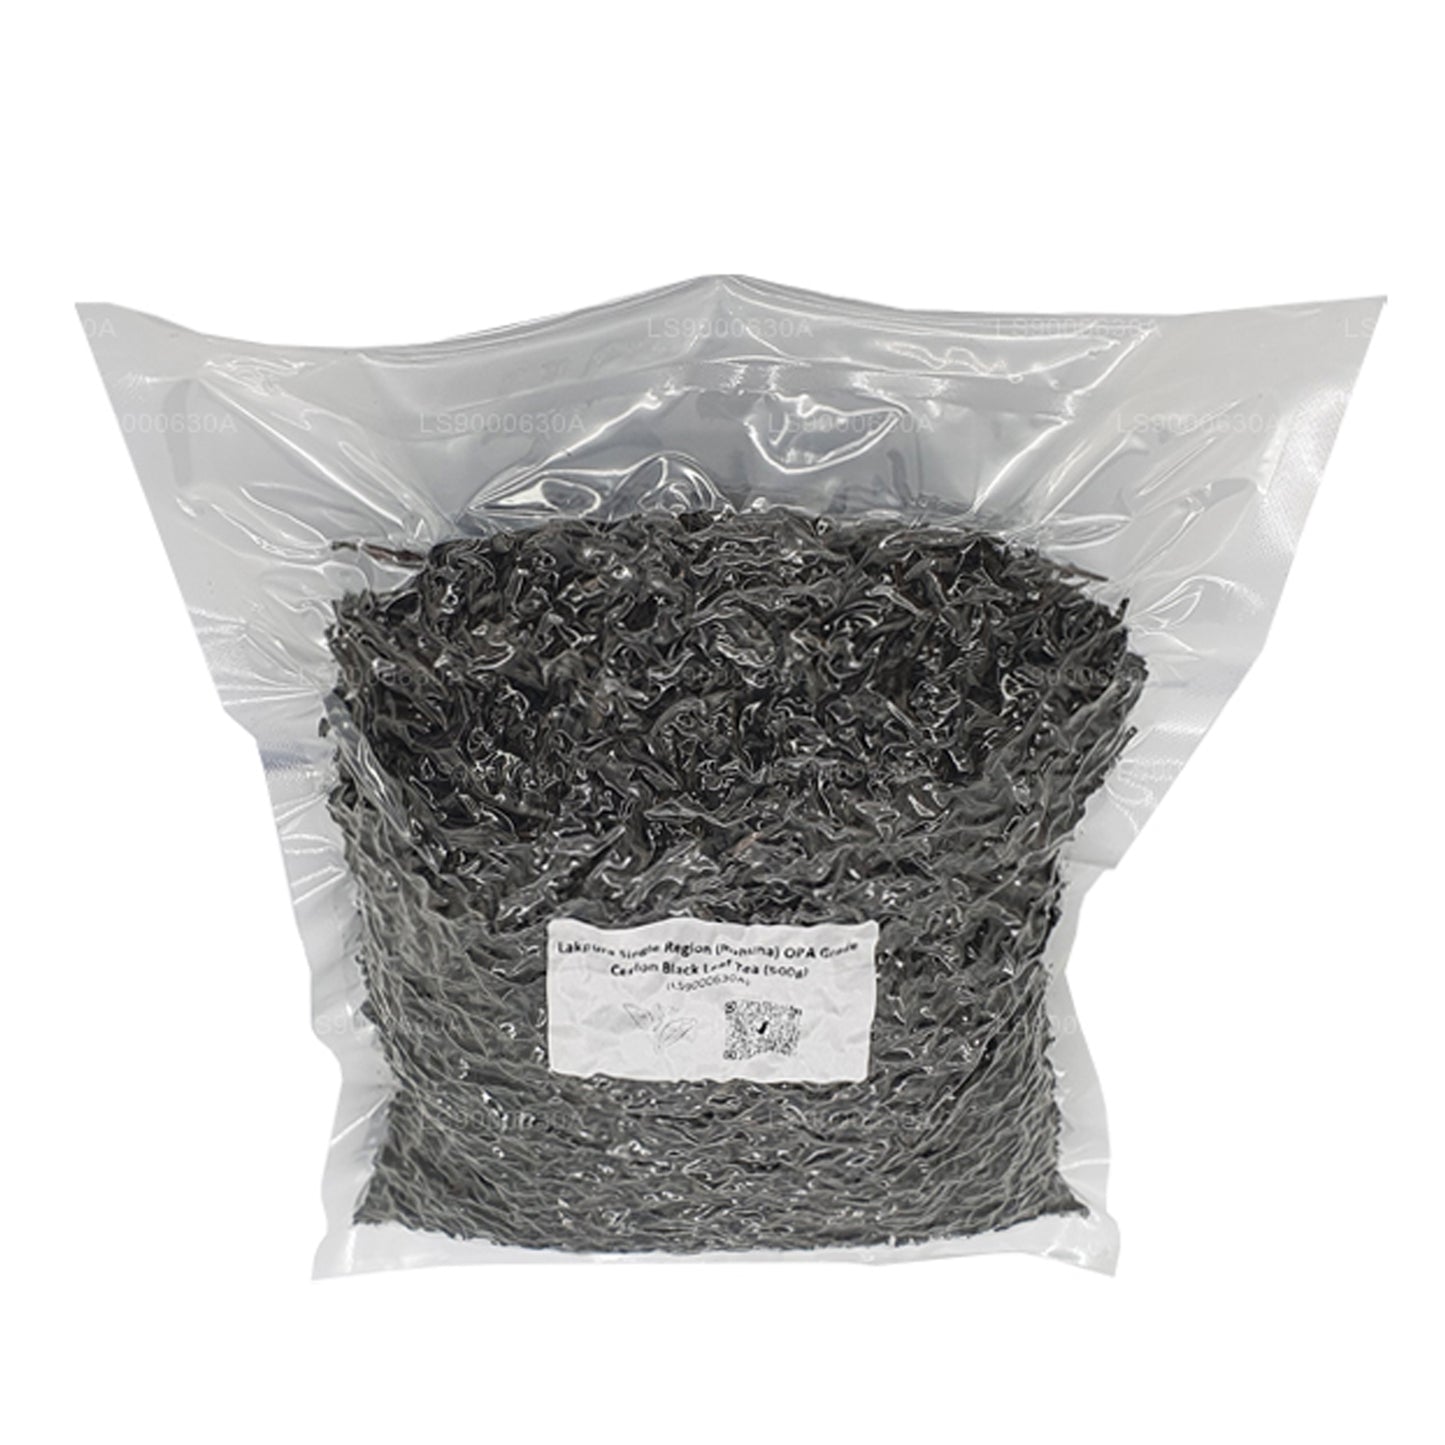 Lakpura Single Region (Ruhuna) OPA Grade Ceylon Black Leaf Tea Pack